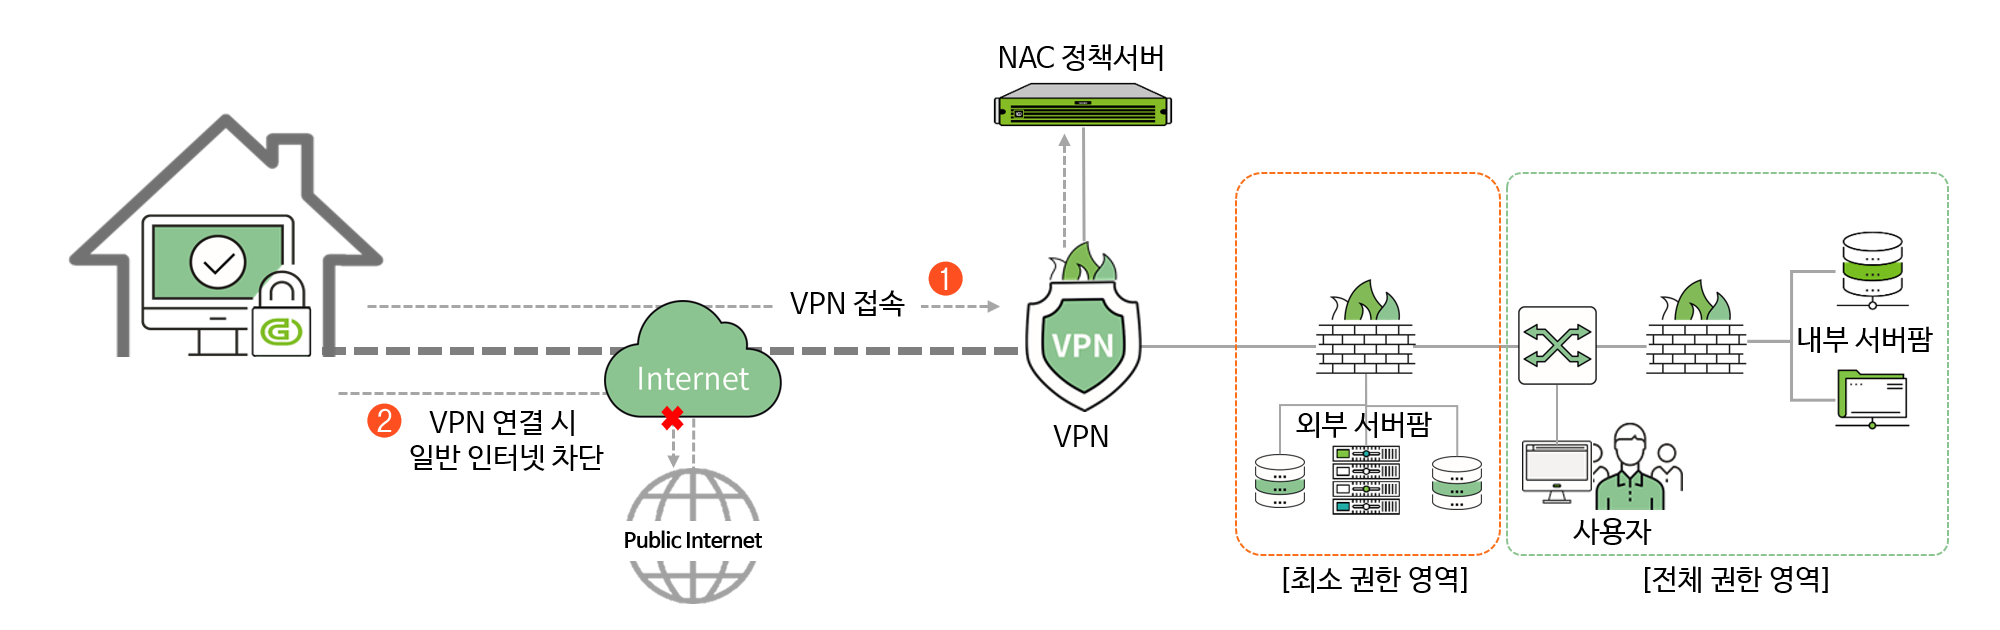 VPN 연결 시 외부 인터넷 차단을 통한 보안 강화